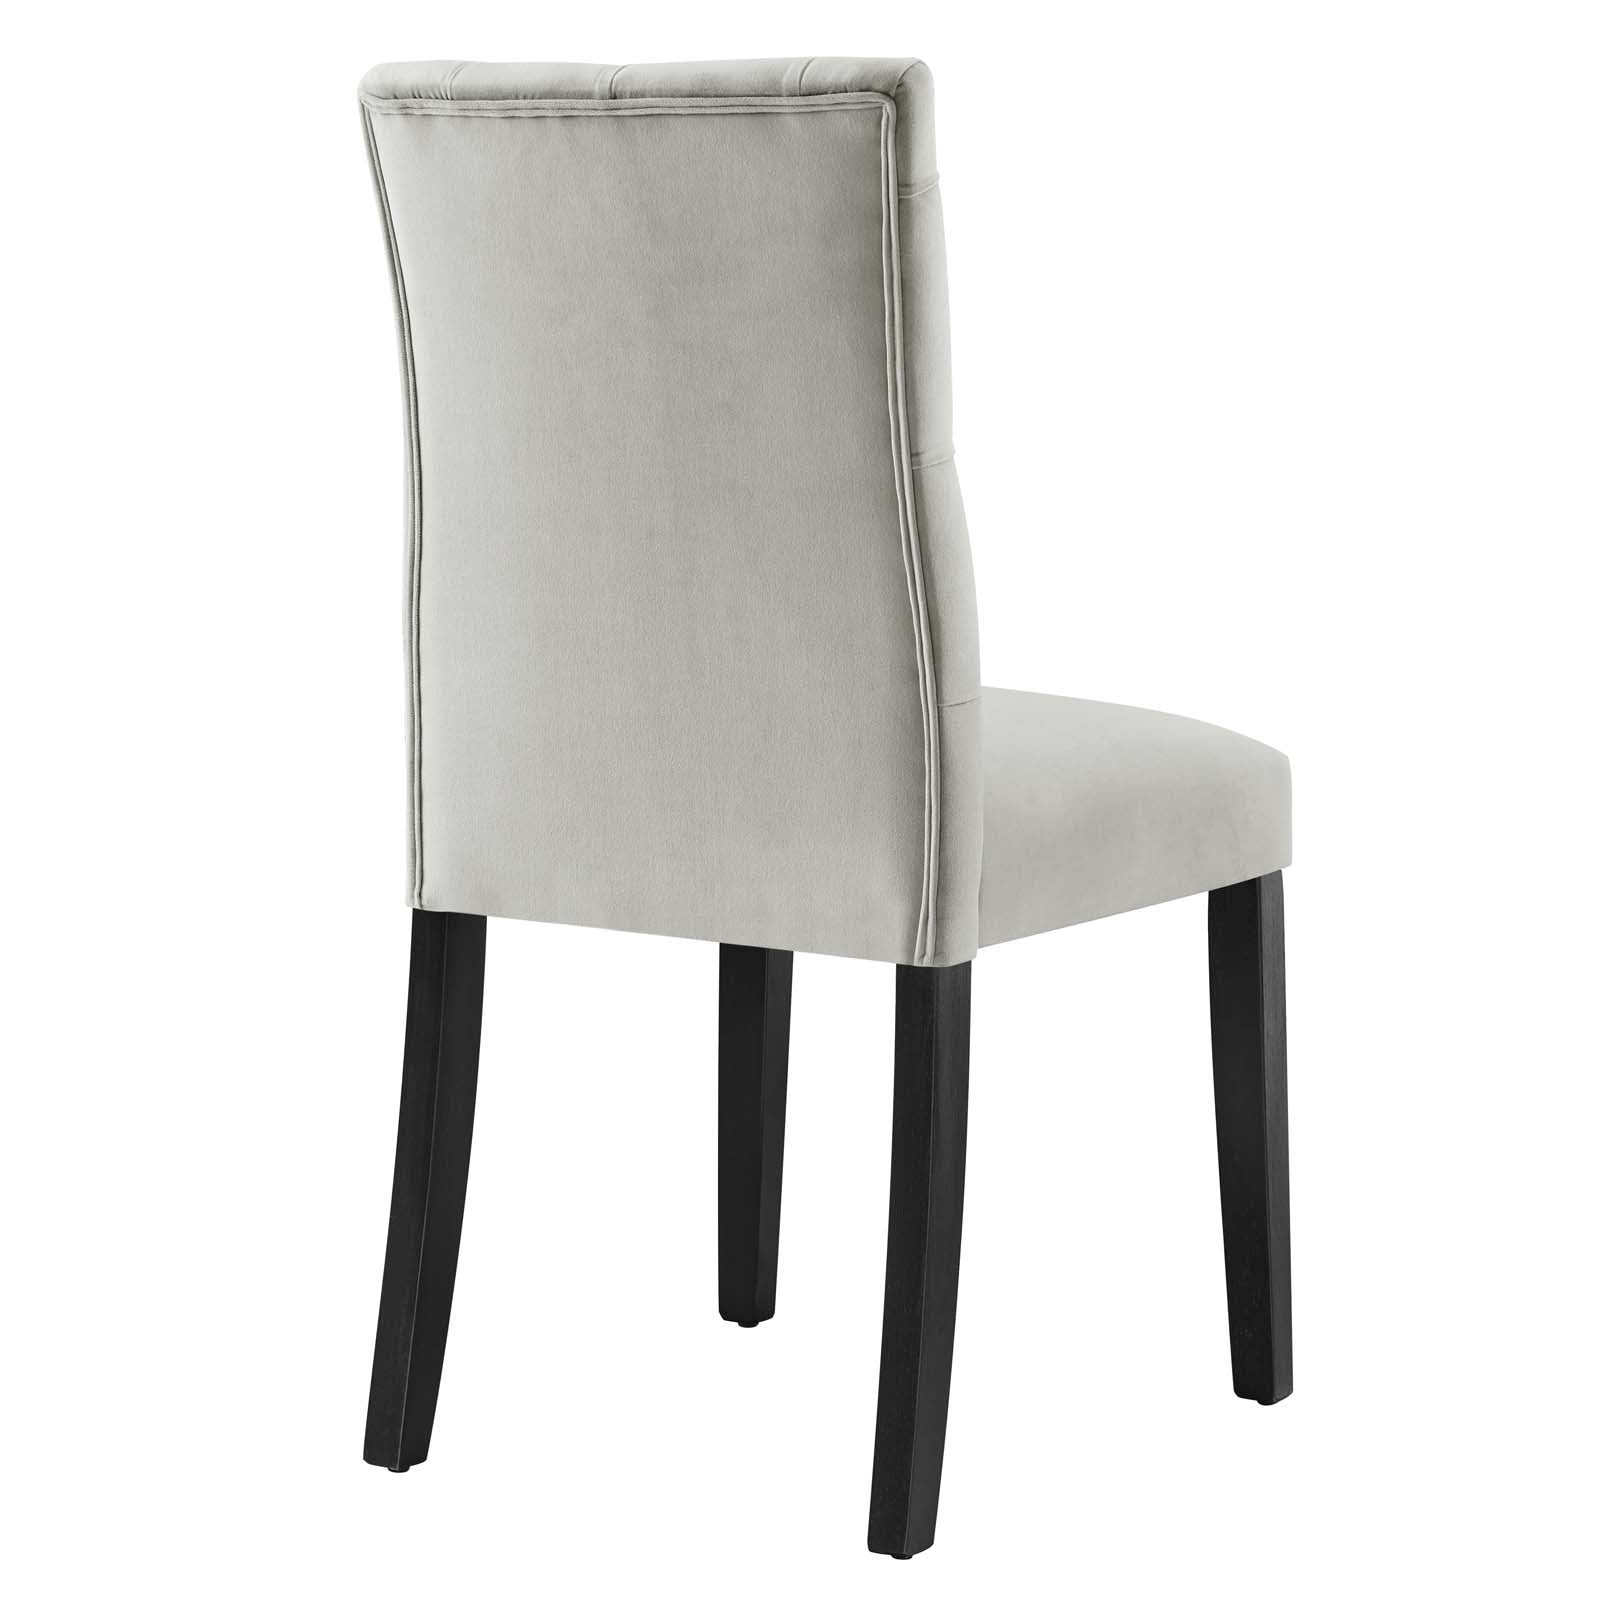 Duchess Performance Velvet Dining Chairs - Set of 2 - East Shore Modern Home Furnishings